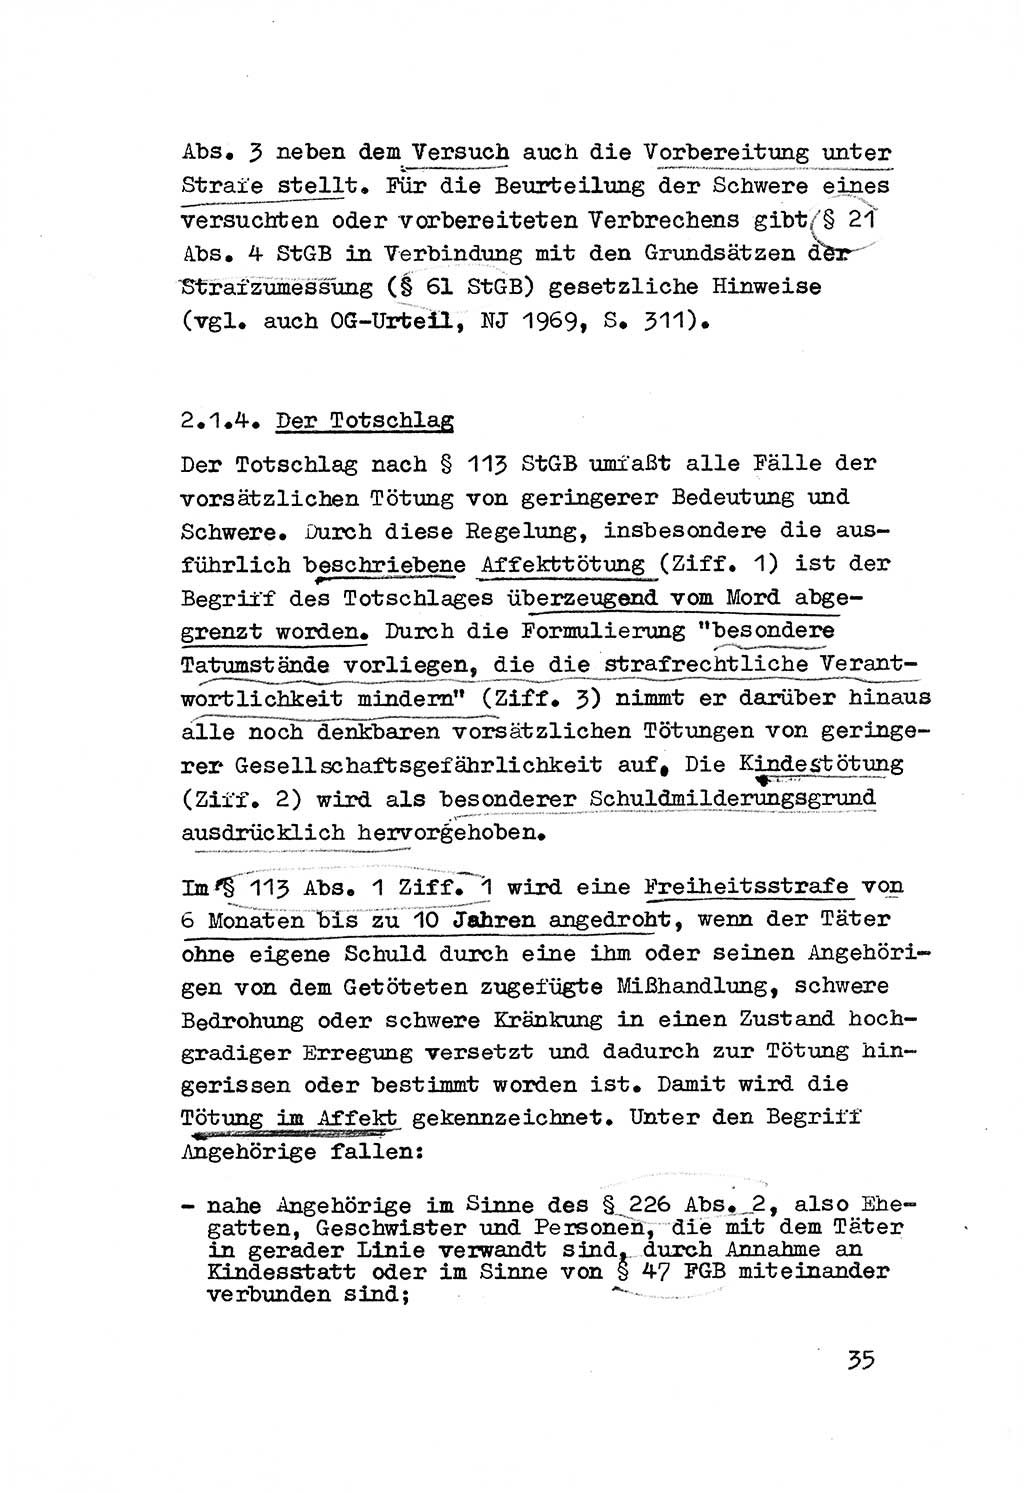 Strafrecht der DDR (Deutsche Demokratische Republik), Besonderer Teil, Lehrmaterial, Heft 3 1969, Seite 35 (Strafr. DDR BT Lehrmat. H. 3 1969, S. 35)